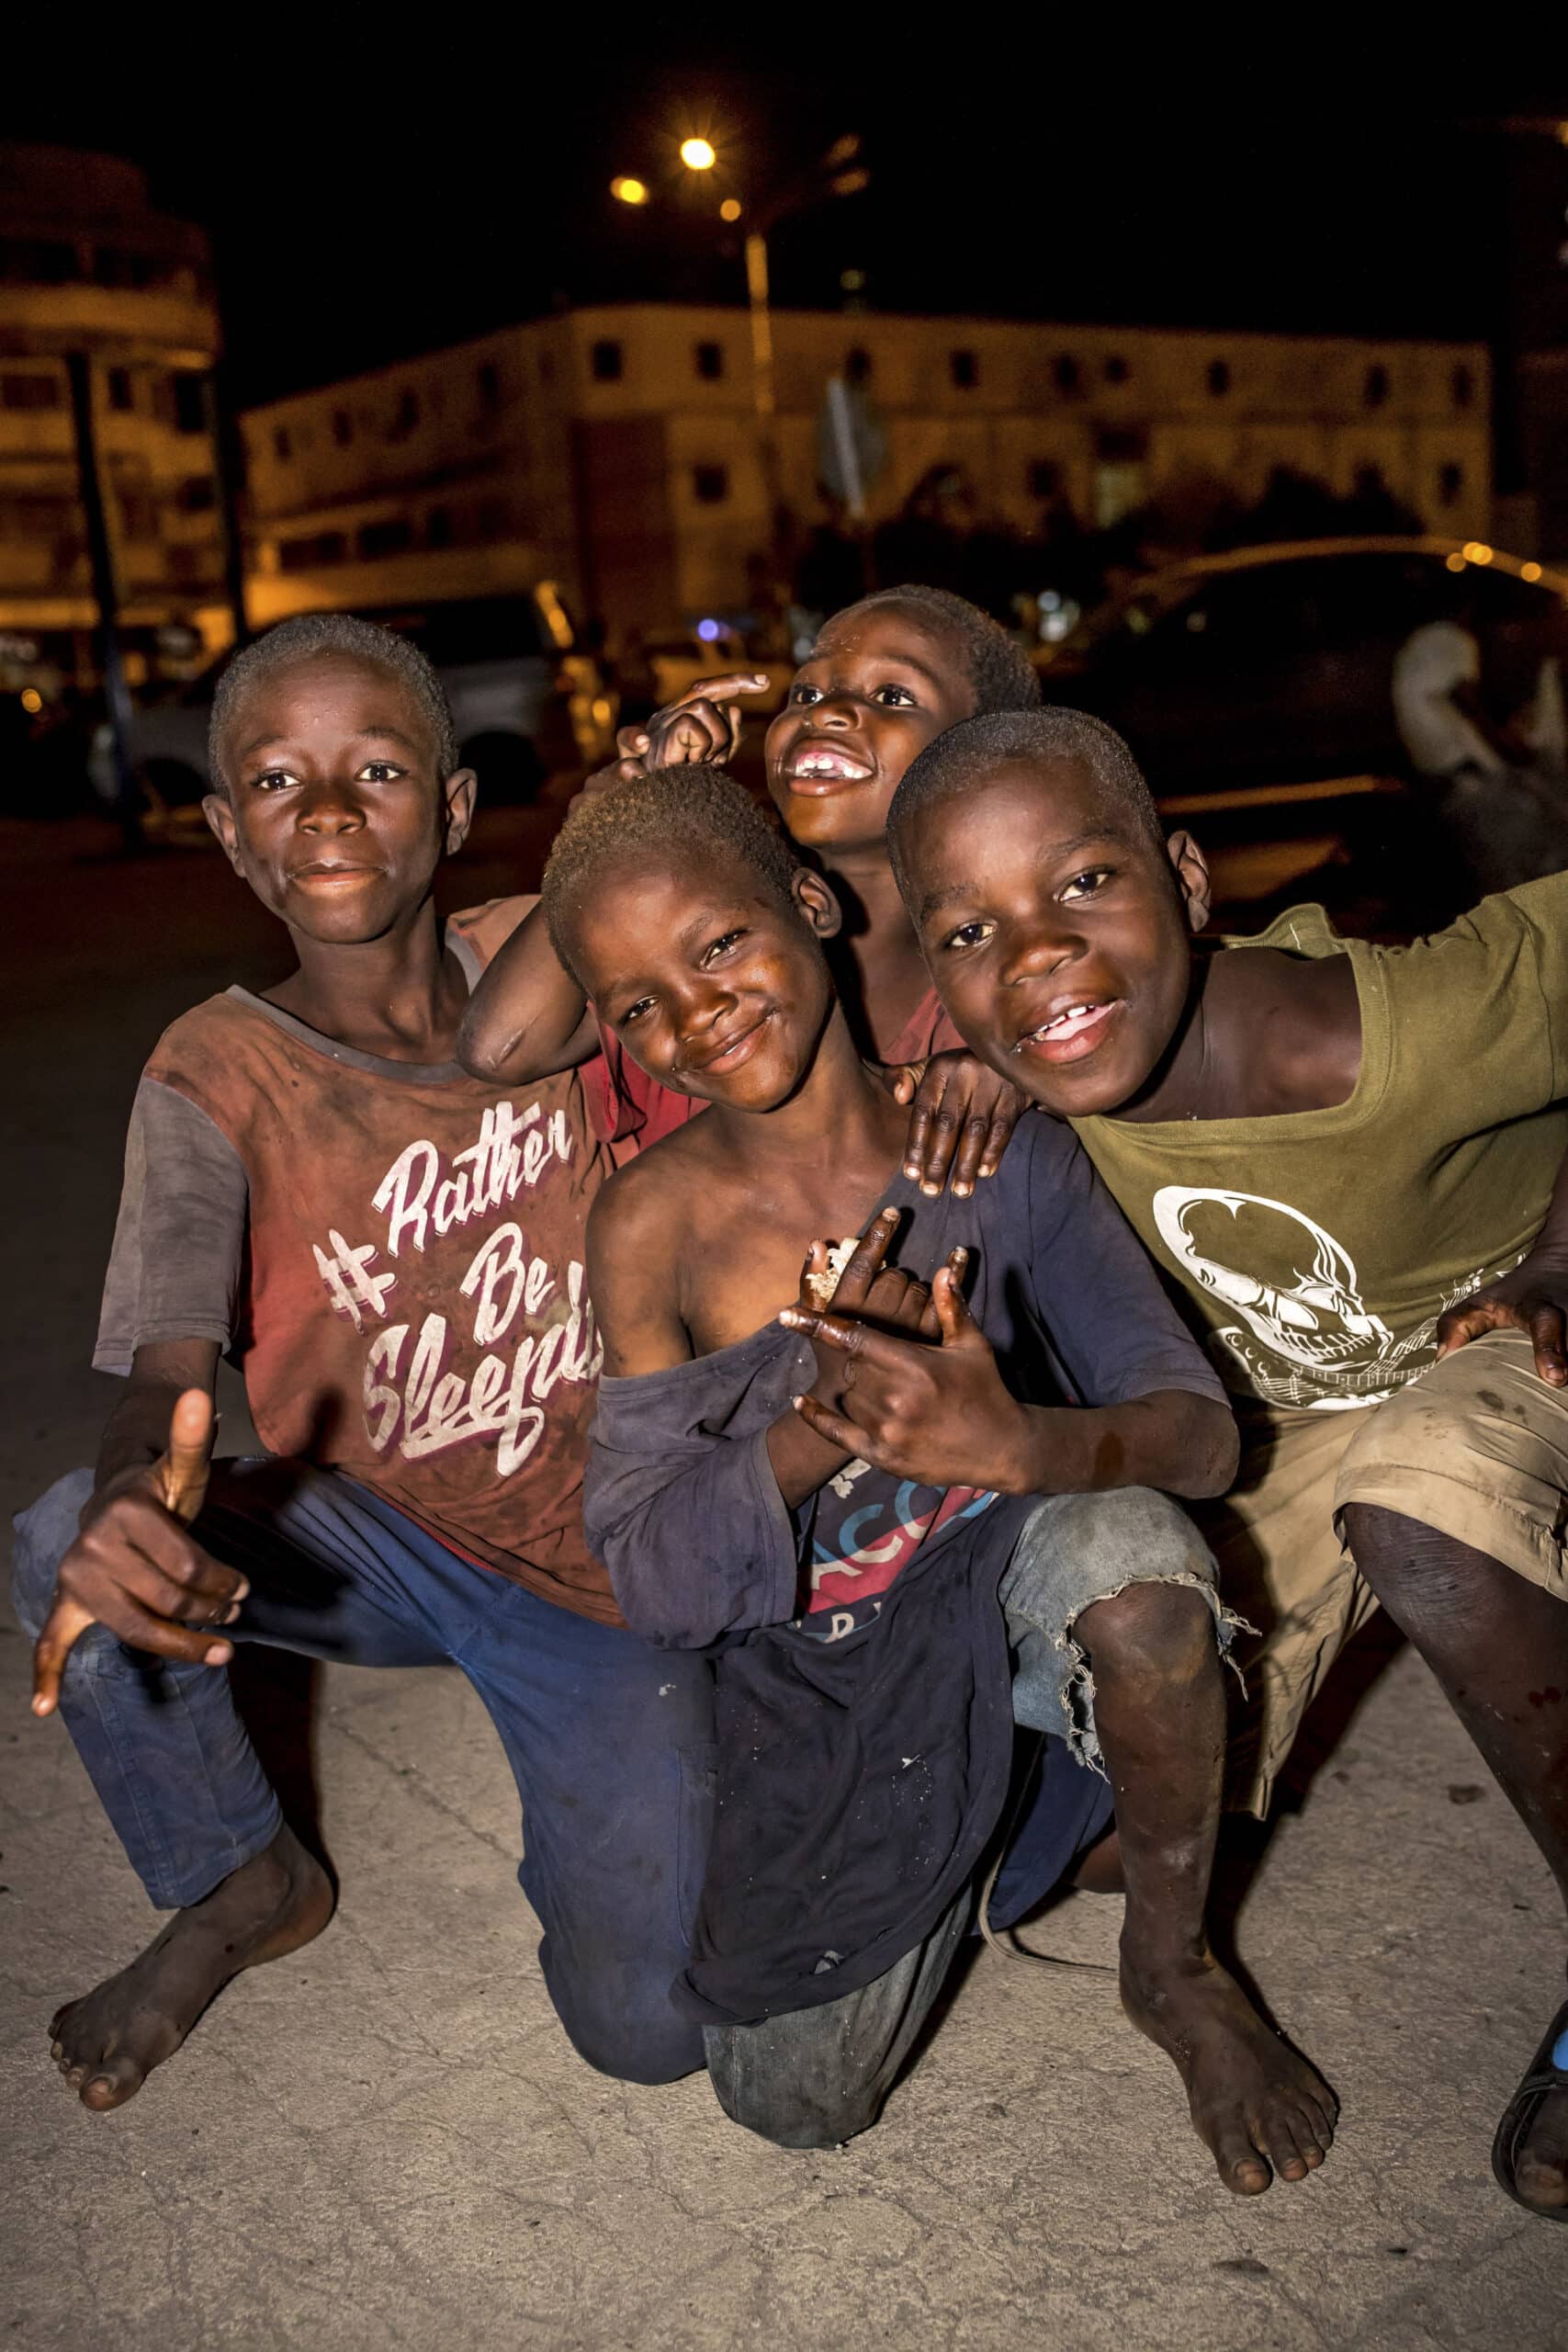 Vier lächelnde Jungen drängen sich nachts auf einer Stadtstraße zusammen. Sie wirken fröhlich und verspielt, wobei einer von ihnen das Peace-Zeichen macht. Sie tragen abgetragene Kleidung, was ein Gefühl der Kameradschaft ausdrückt. © Fotografie Tomas Rodriguez